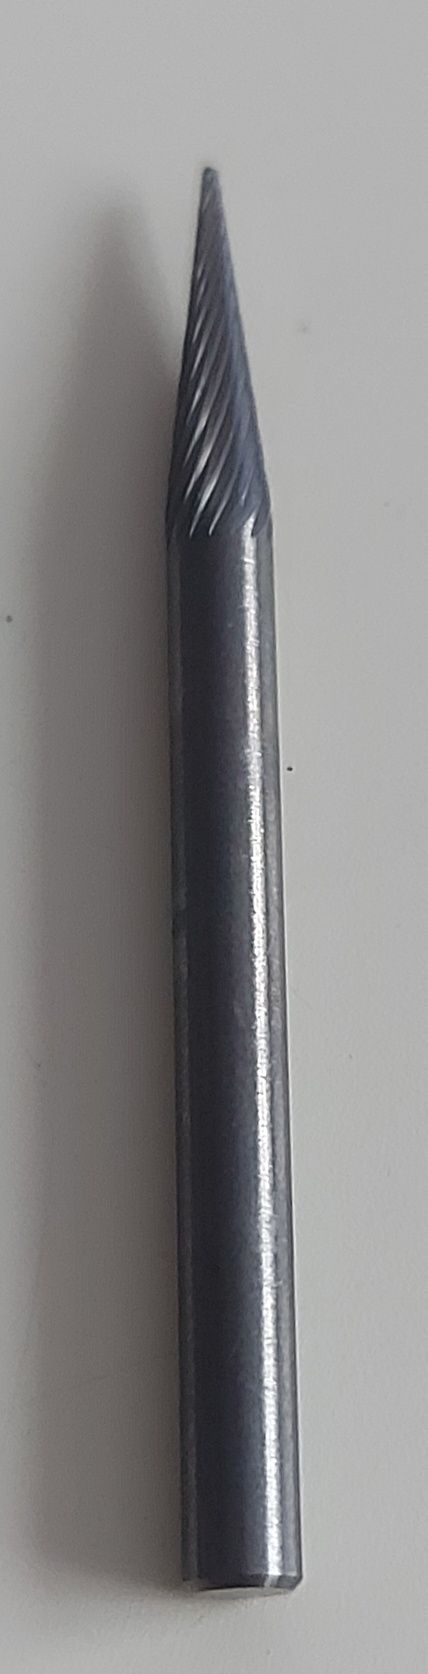 Garant pilnik obrotowy drobny M0311